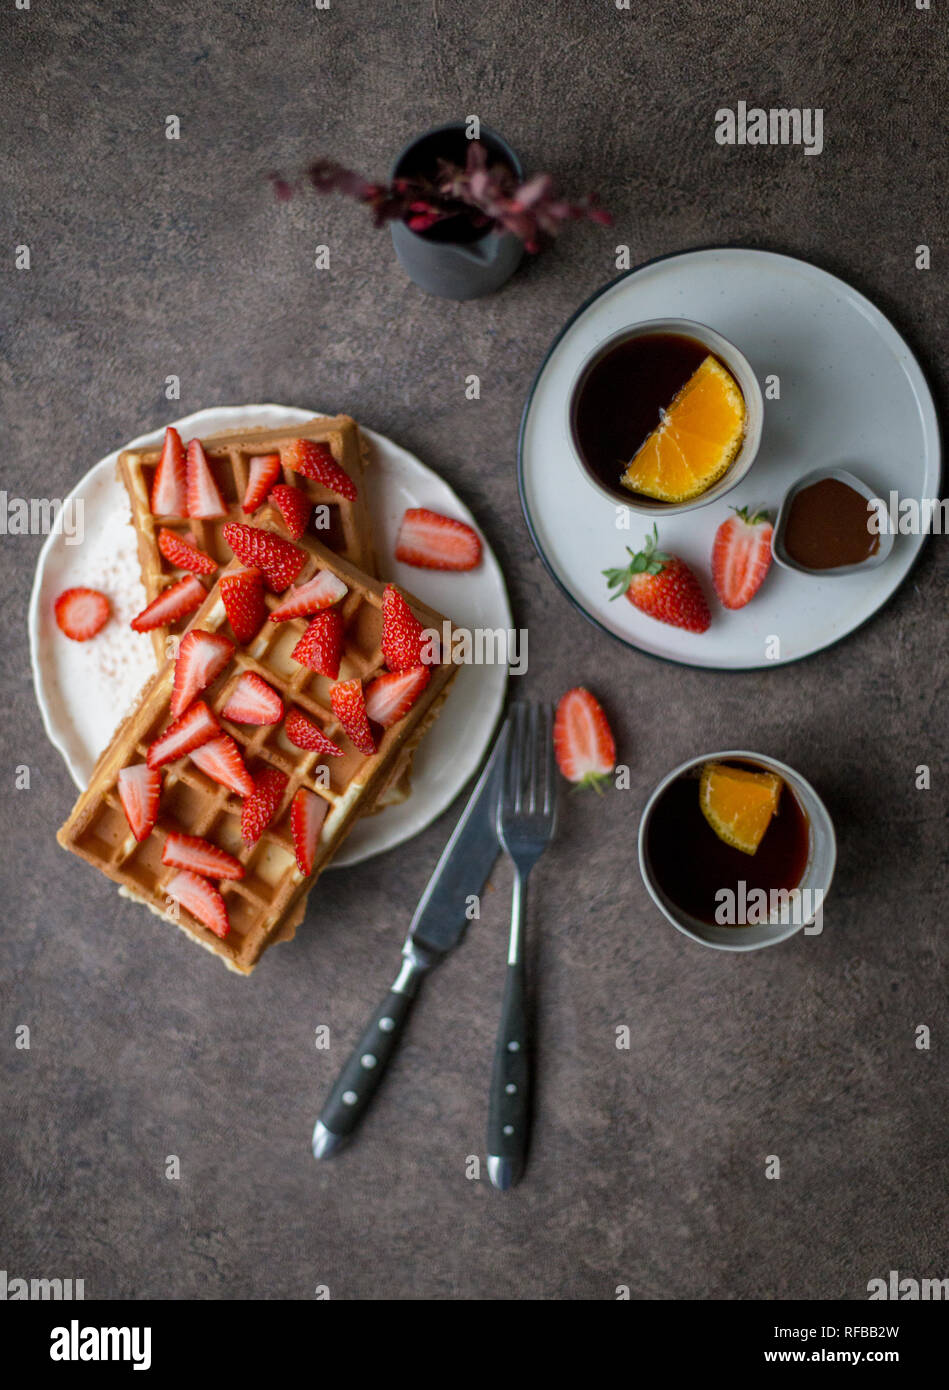 Sweet Belgique gaufres avec fraise à plaque blanche et deux tasse de thé au citron à l'arrière-plan sombre. Concept de style de vie sain pour le menu Banque D'Images